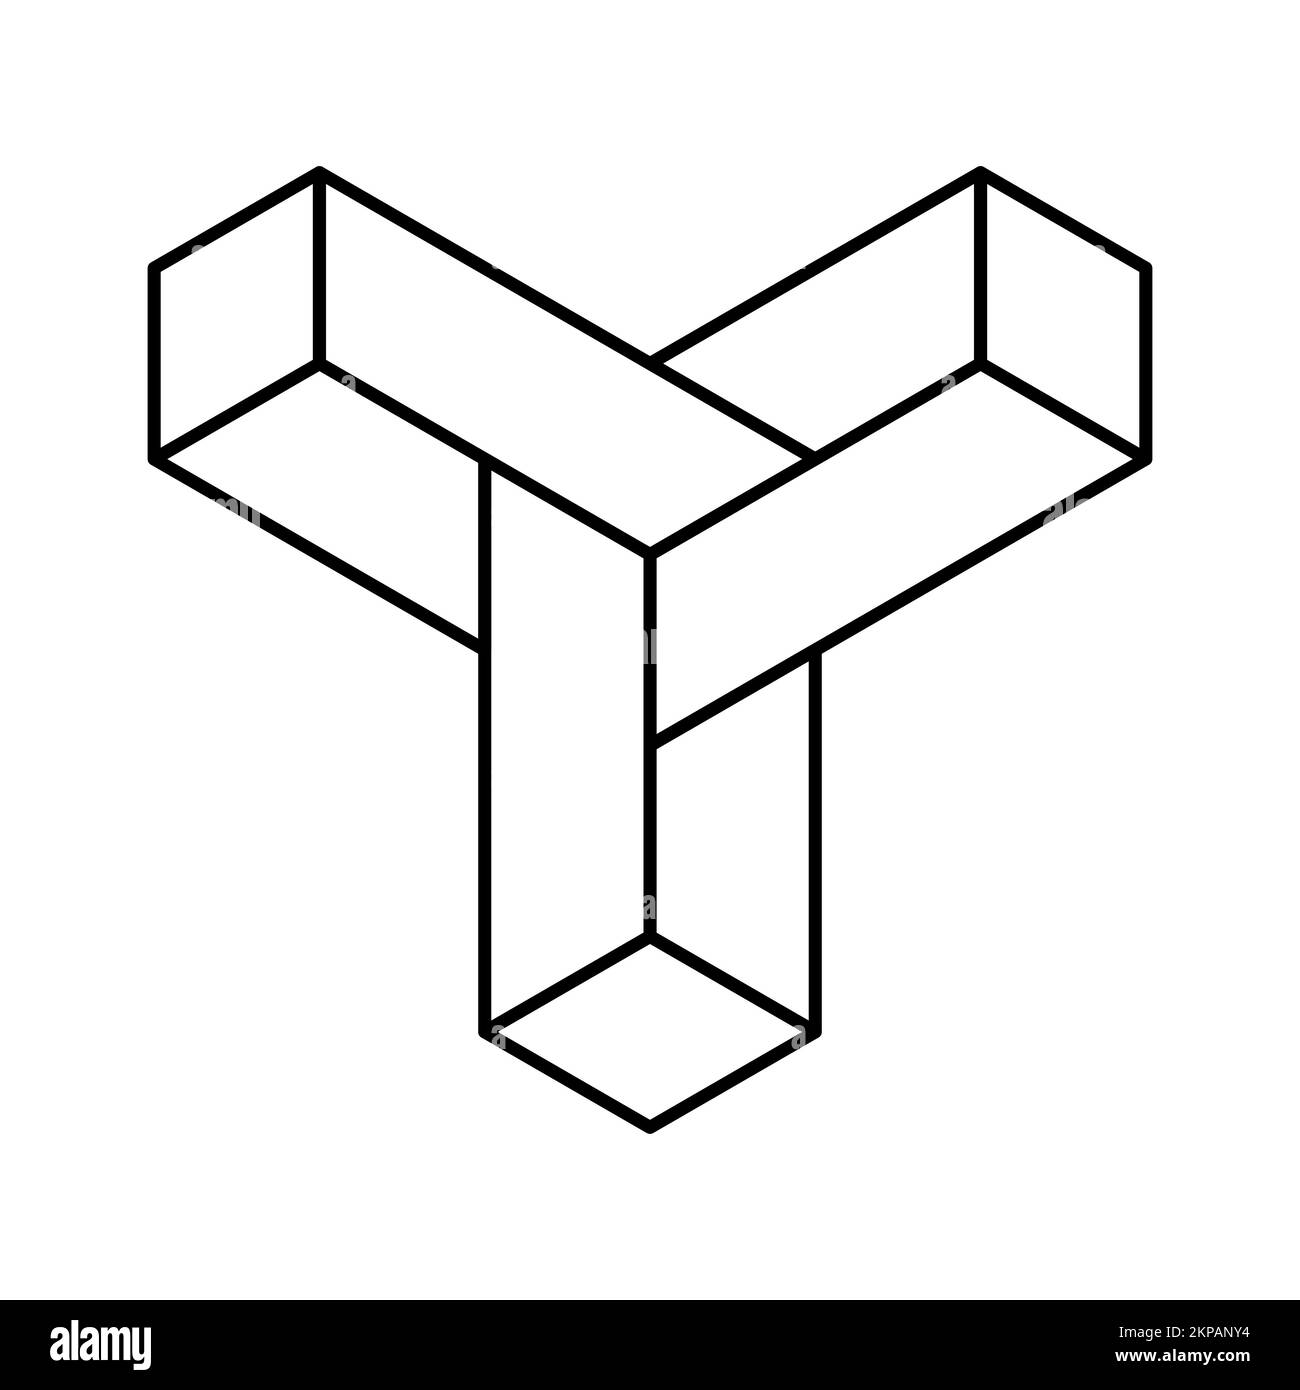 Logo lineare con tre frecce 3D. Modello di logotipo geometrico LLL. Le punte delle frecce si incontrano nel mezzo. Direzione centrale. Elementi di forma poligonale. Illustrazione Vettoriale